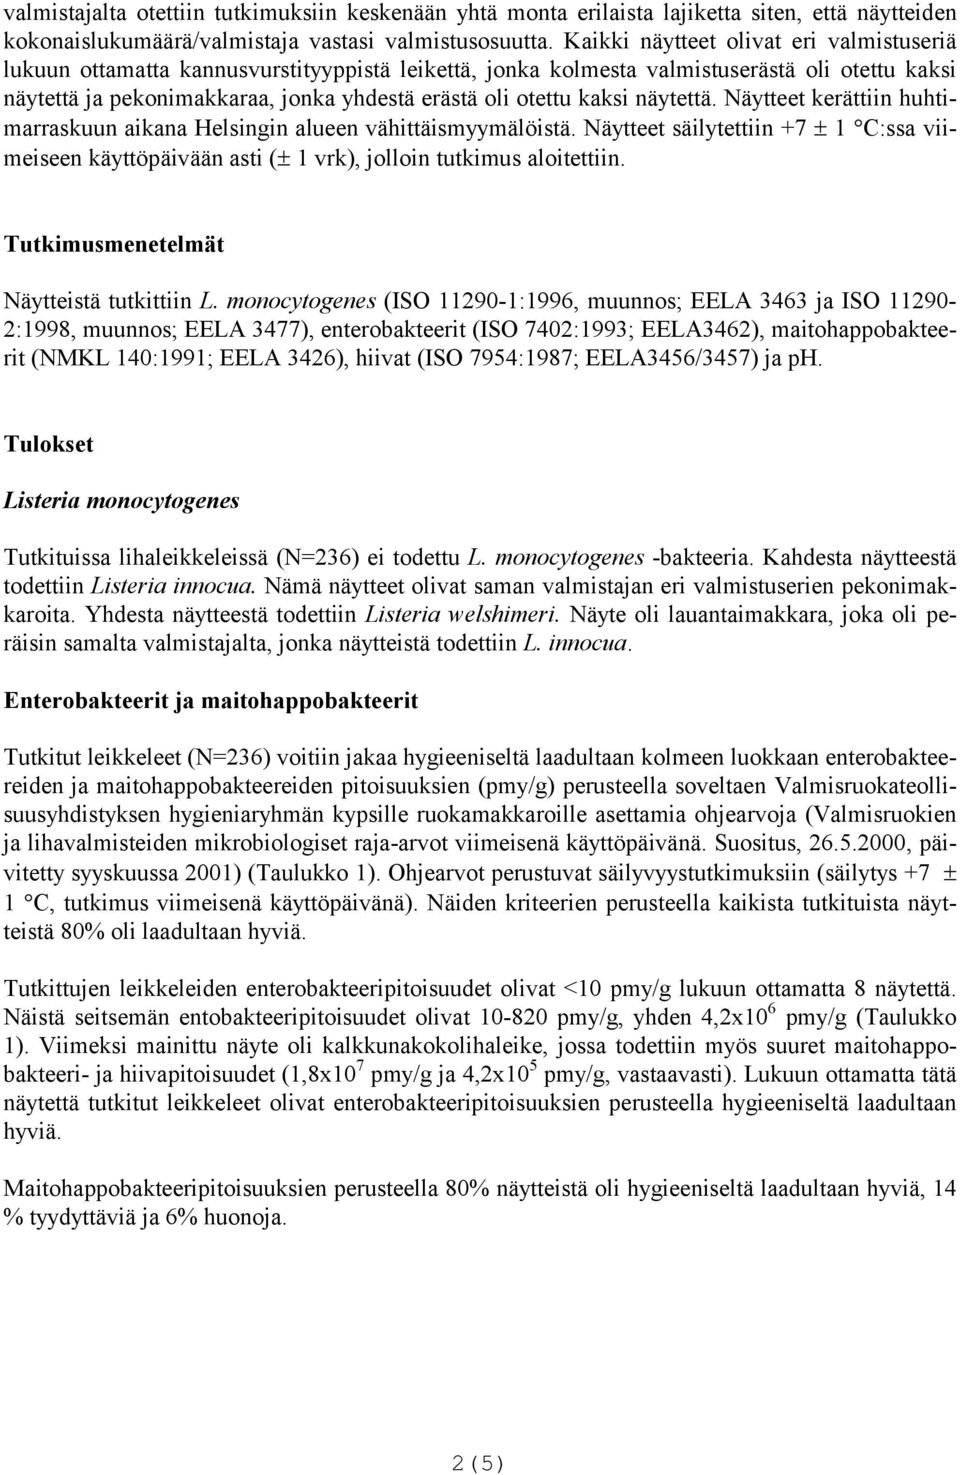 kaksi näytettä. Näytteet kerättiin huhtimarraskuun aikana Helsingin alueen vähittäismyymälöistä. Näytteet säilytettiin +7 1 C:ssa viimeiseen käyttöpäivään asti ( 1 vrk), jolloin tutkimus aloitettiin.